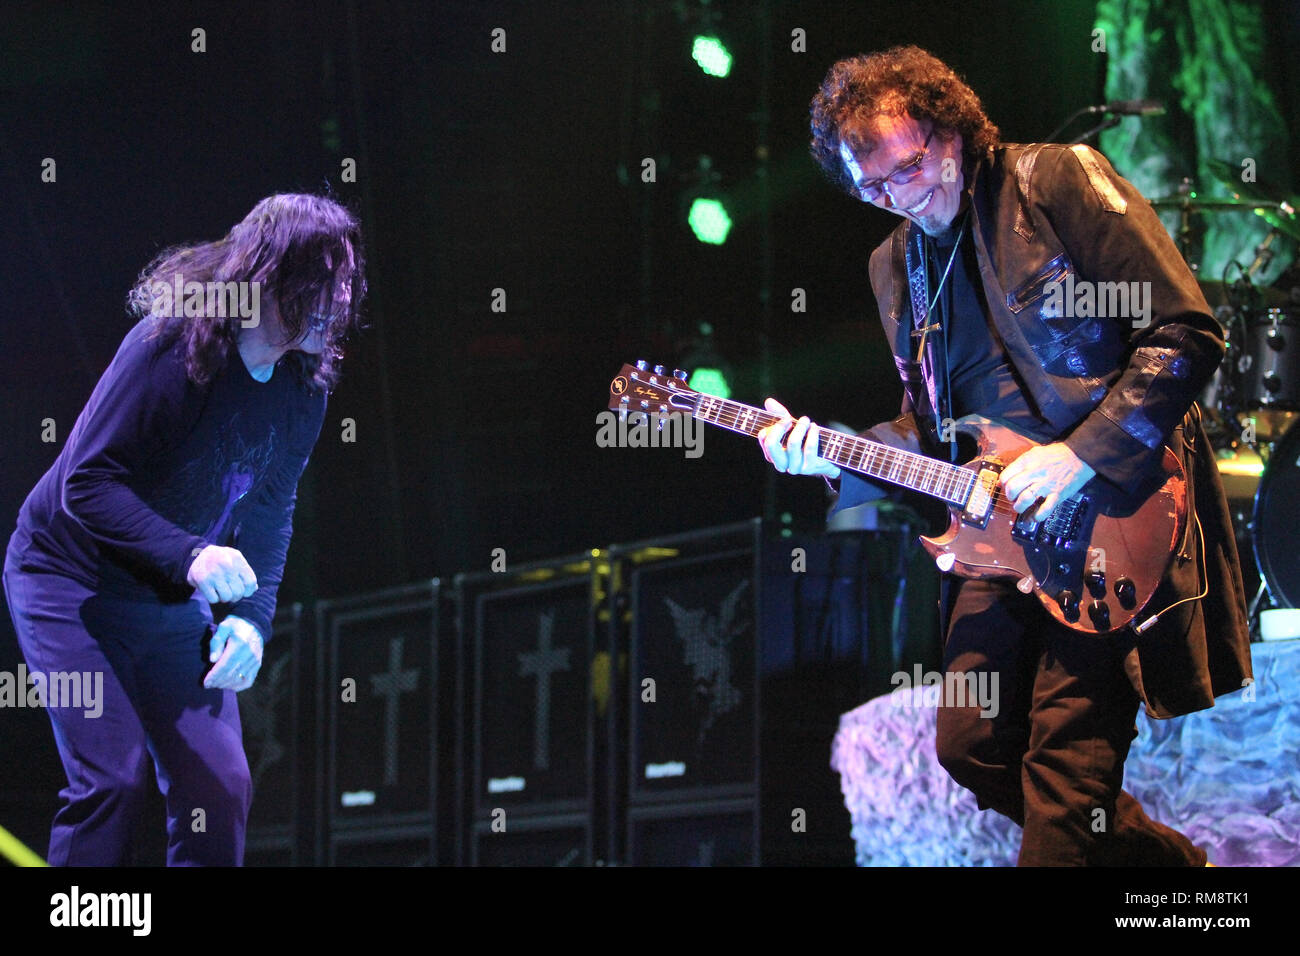 Guitariste et chanteur Ozzy Osbourne, Tony Iommi sont présentés sur scène pendant un concert 'live' apparence avec Black Sabbath. Banque D'Images